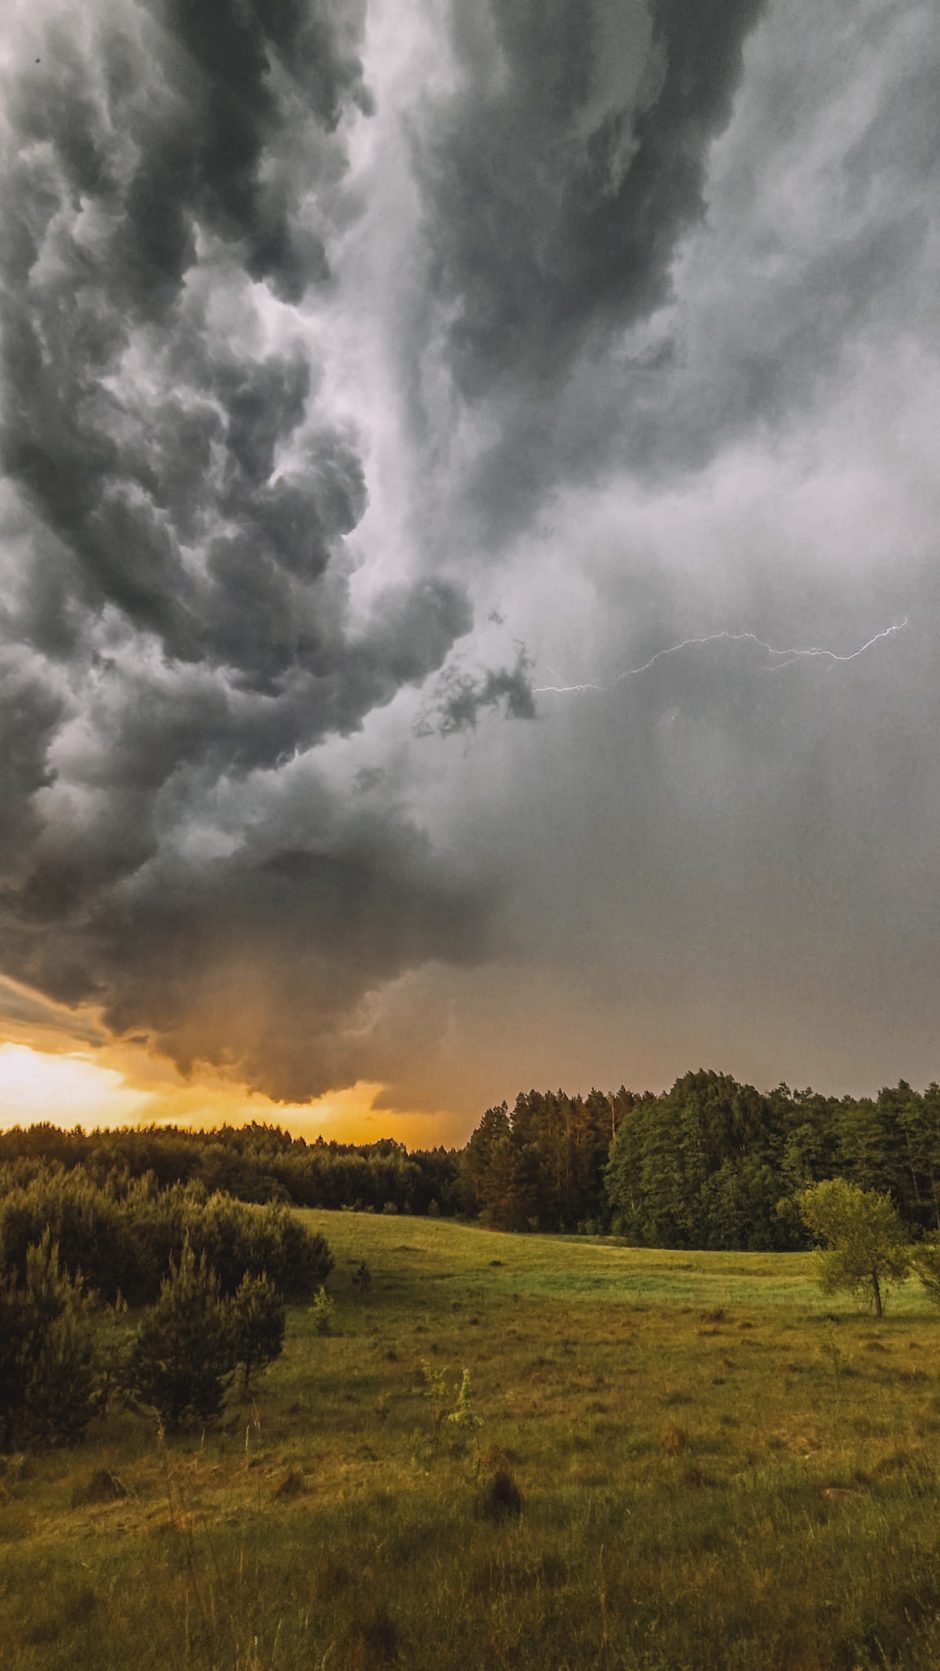 Per Lietuvą slenka audros debesys: kai kur iškrito ir kruša